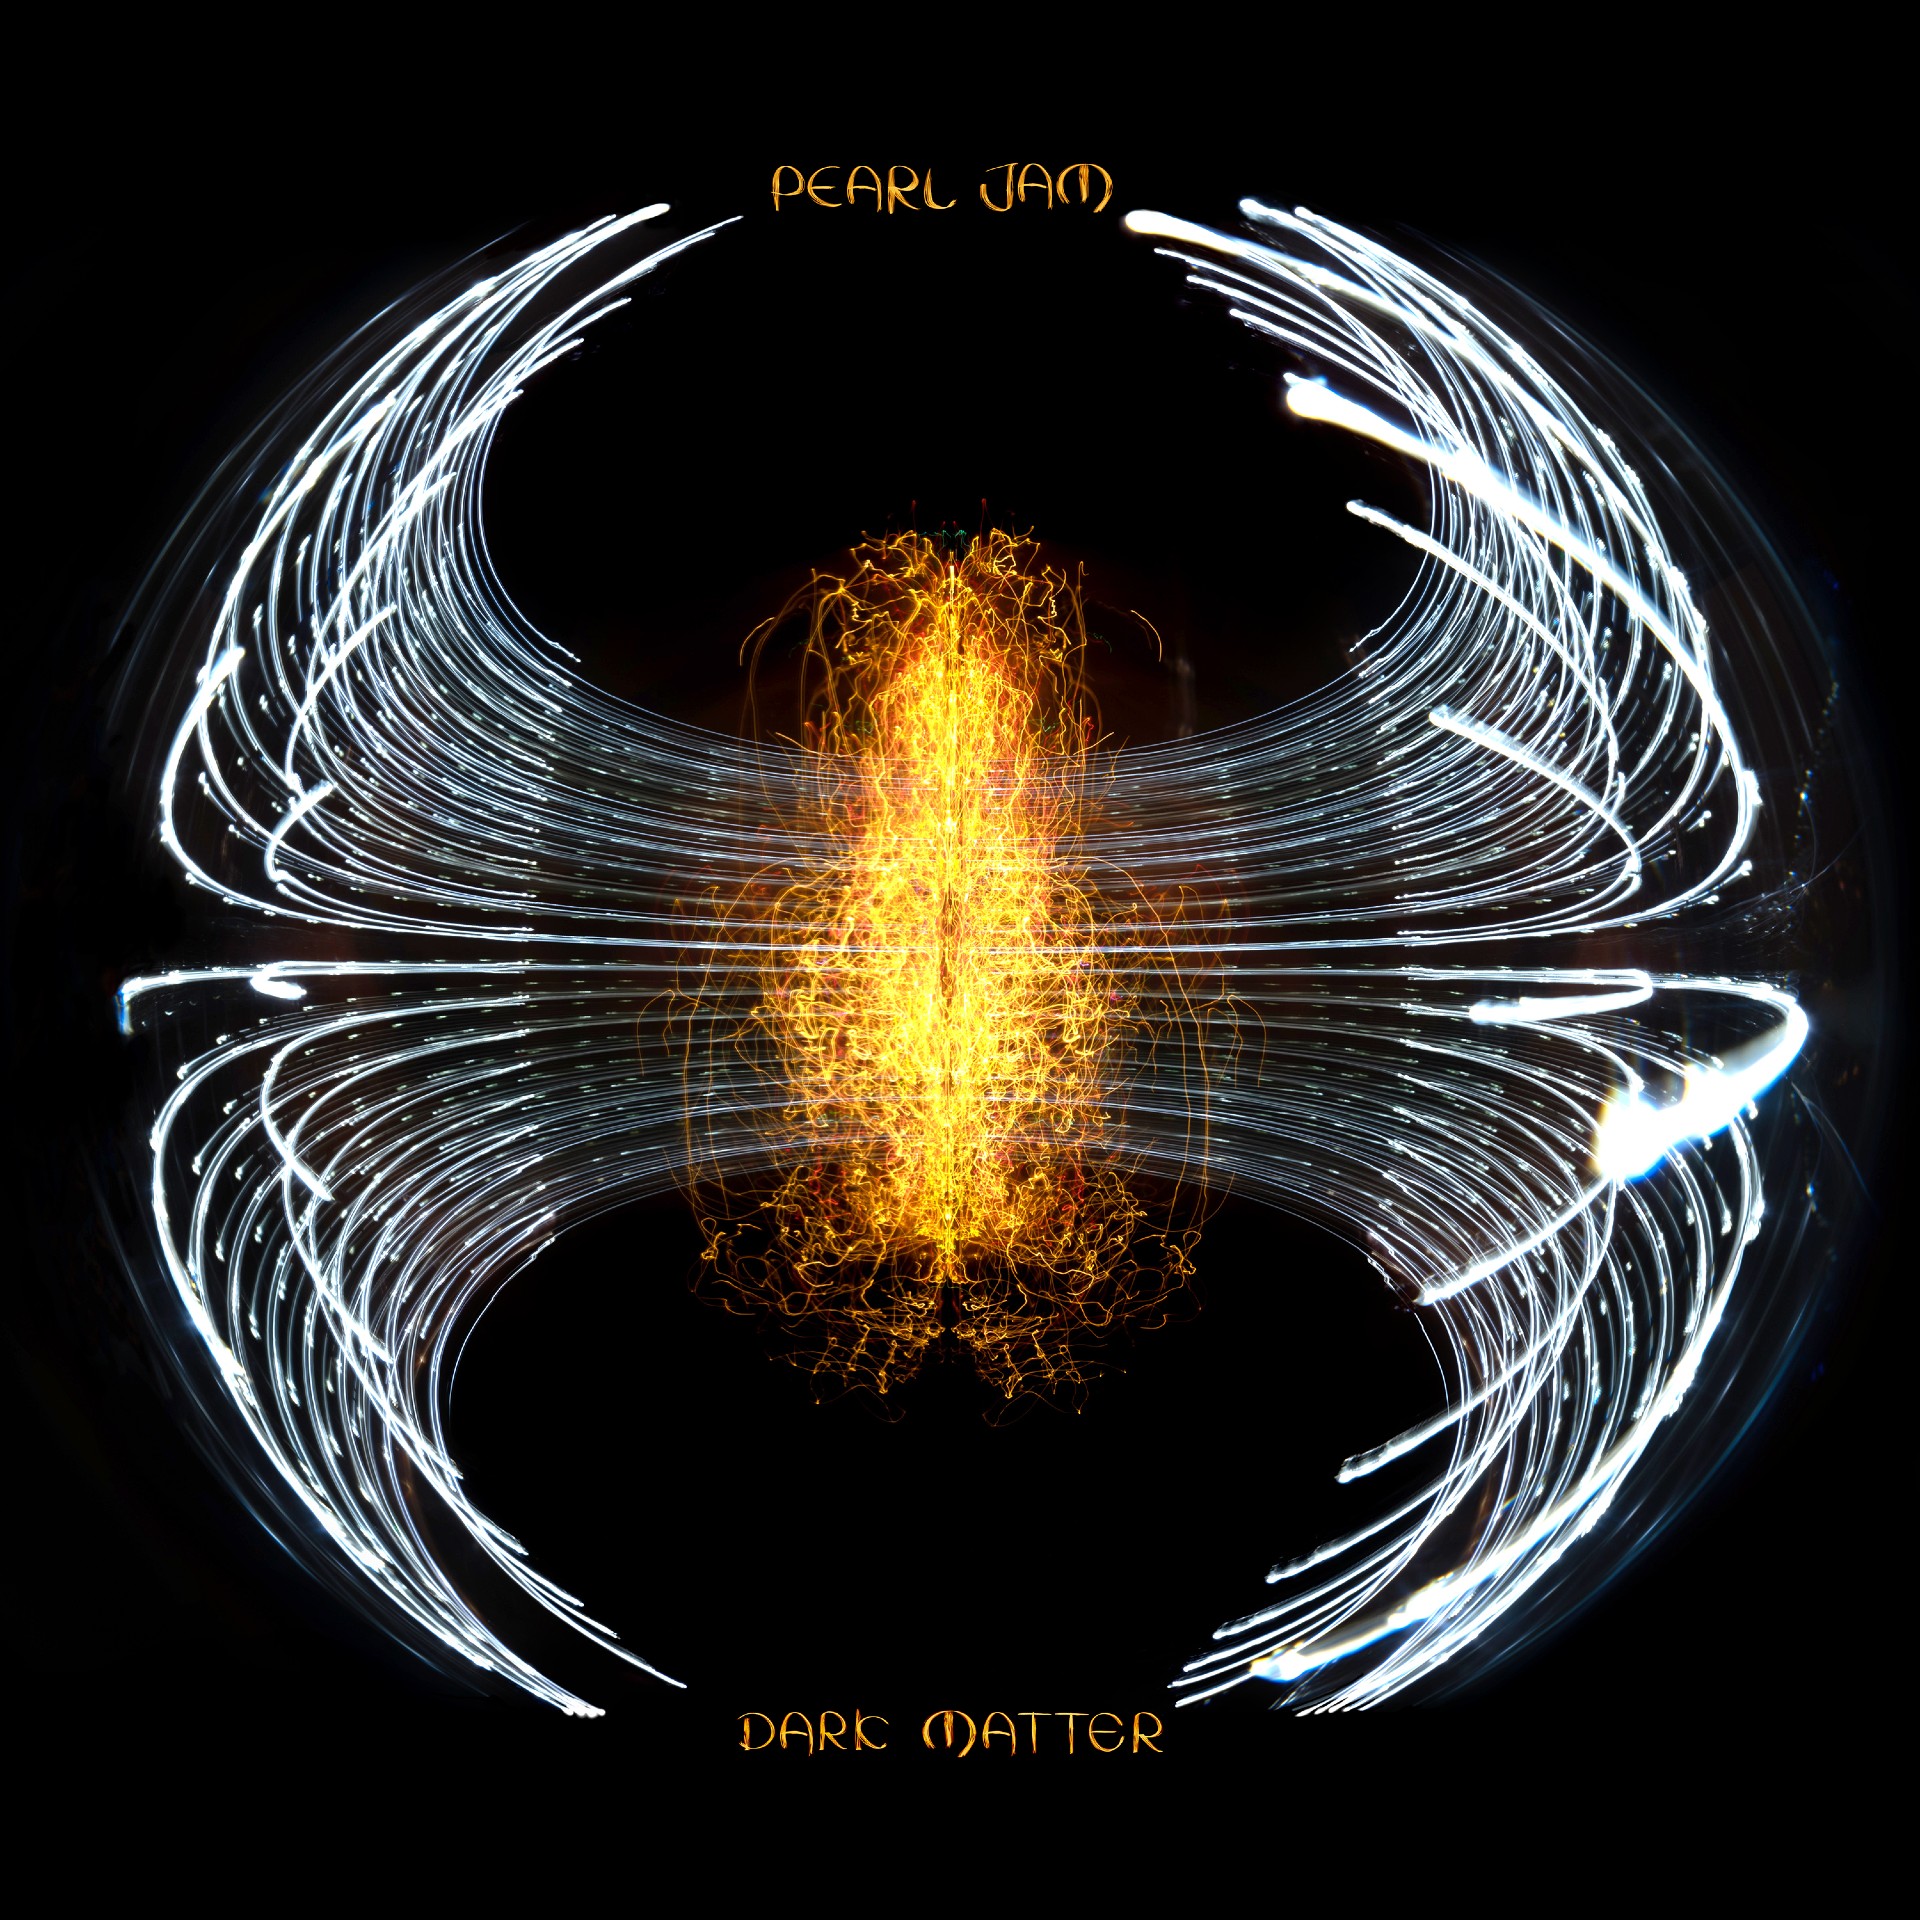 Pearl Jam ‘Dark Matter’ Album Artwork